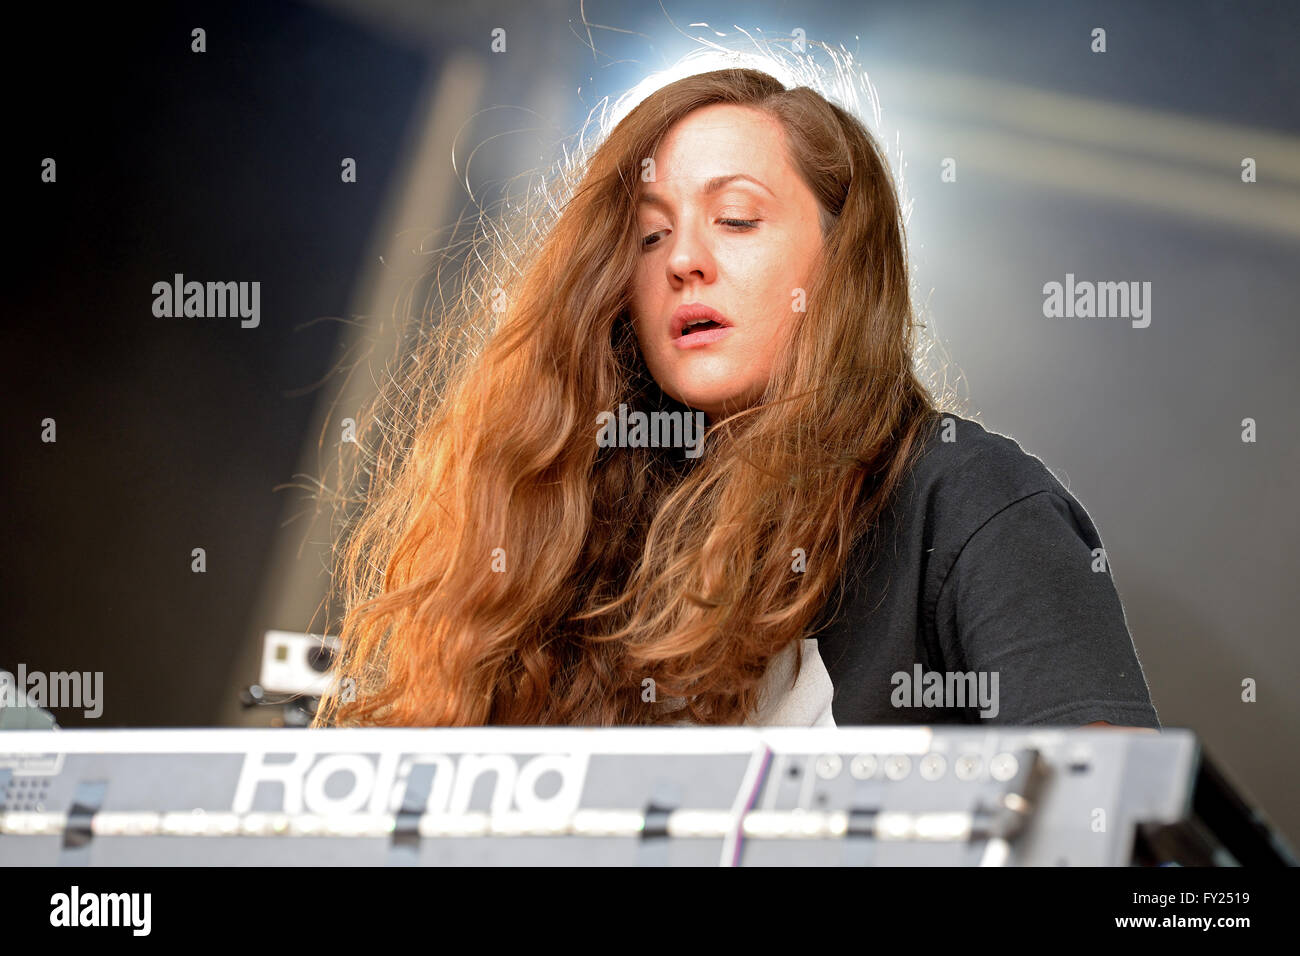 Barcelone - JUIN 13 : Jessy Lanza (musicien) performance à Sonar Festival le 13 juin 2014 à Barcelone, Espagne. Banque D'Images